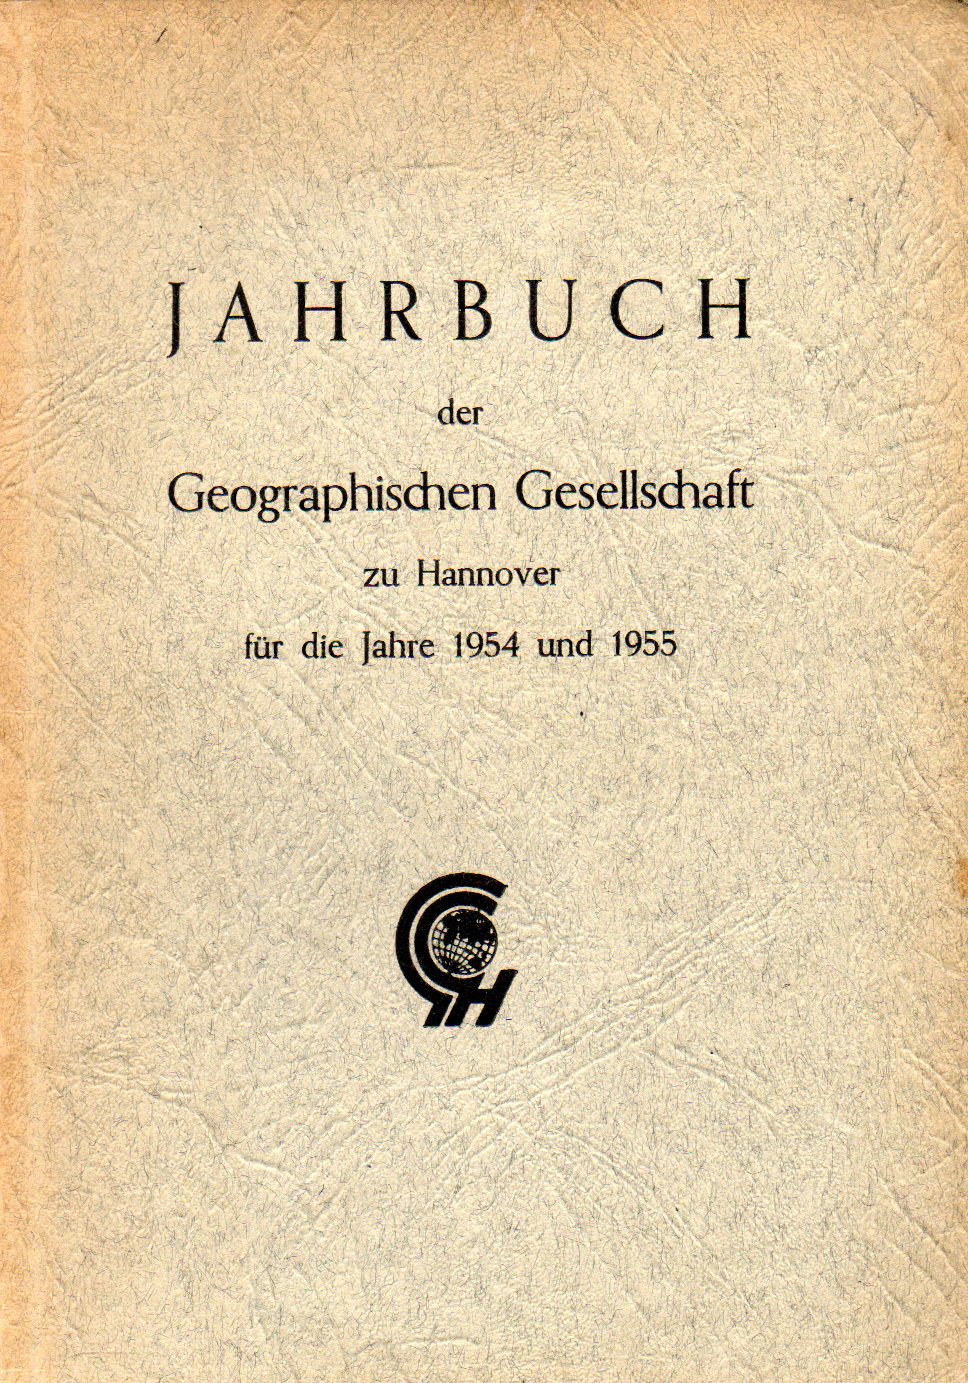 Geographische Gesellschaft zu Hannover  Jahrbuch für die Jahre 1954 und 1955 